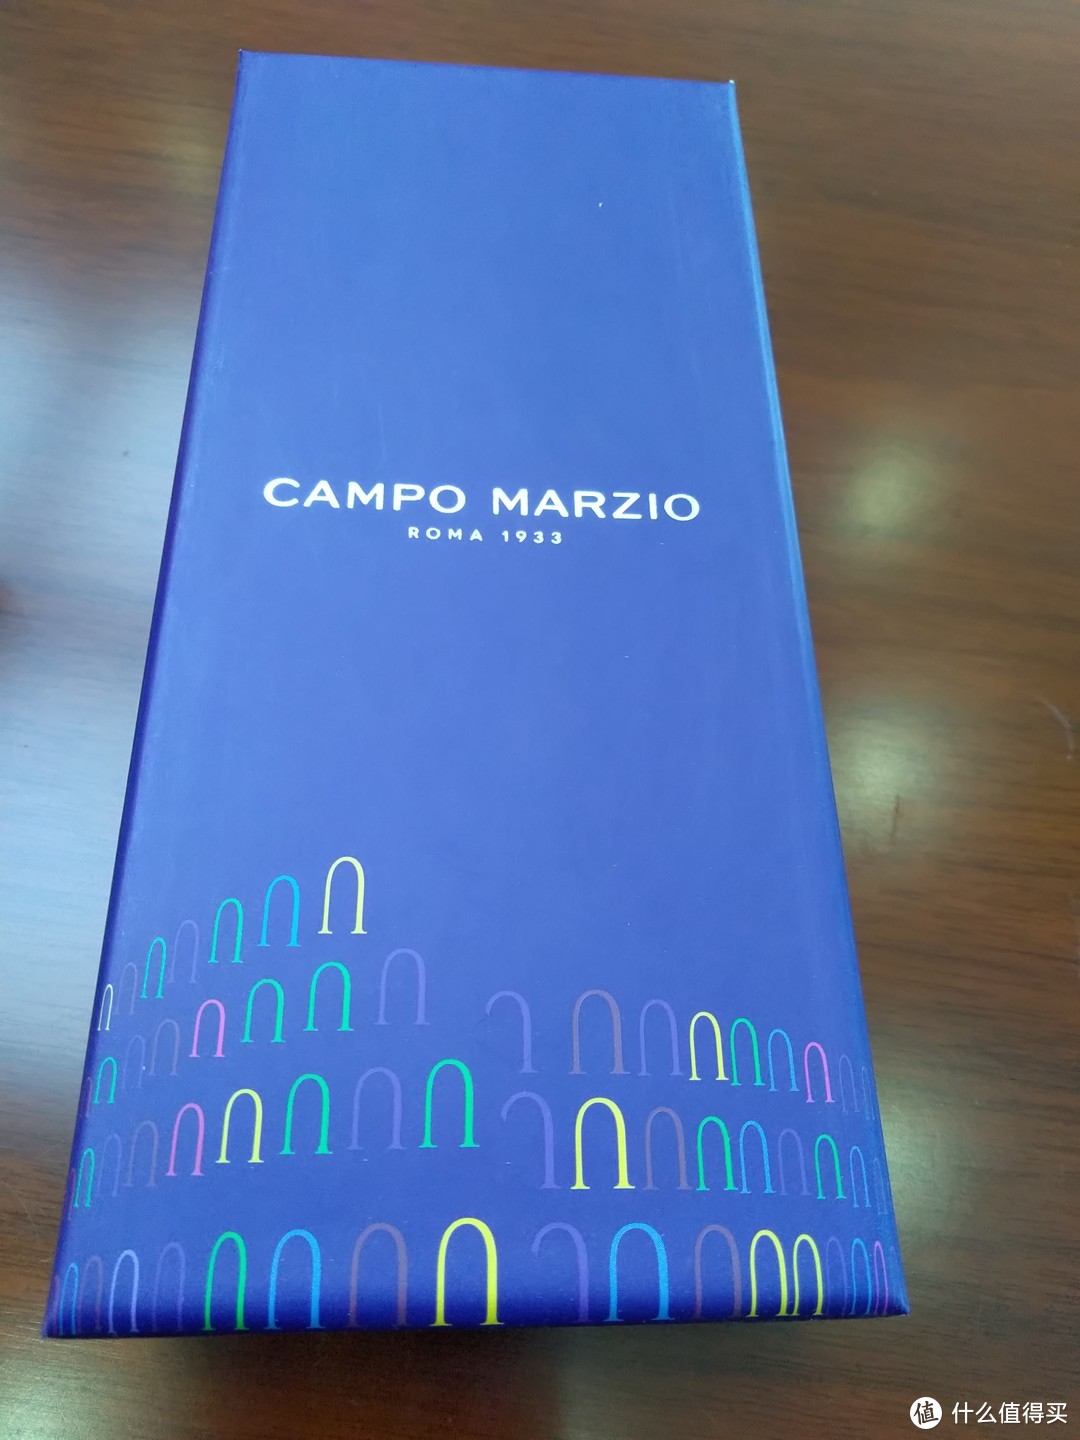 一支有分量的钢笔——CAMPO MARZIO 钢笔礼盒套装开箱